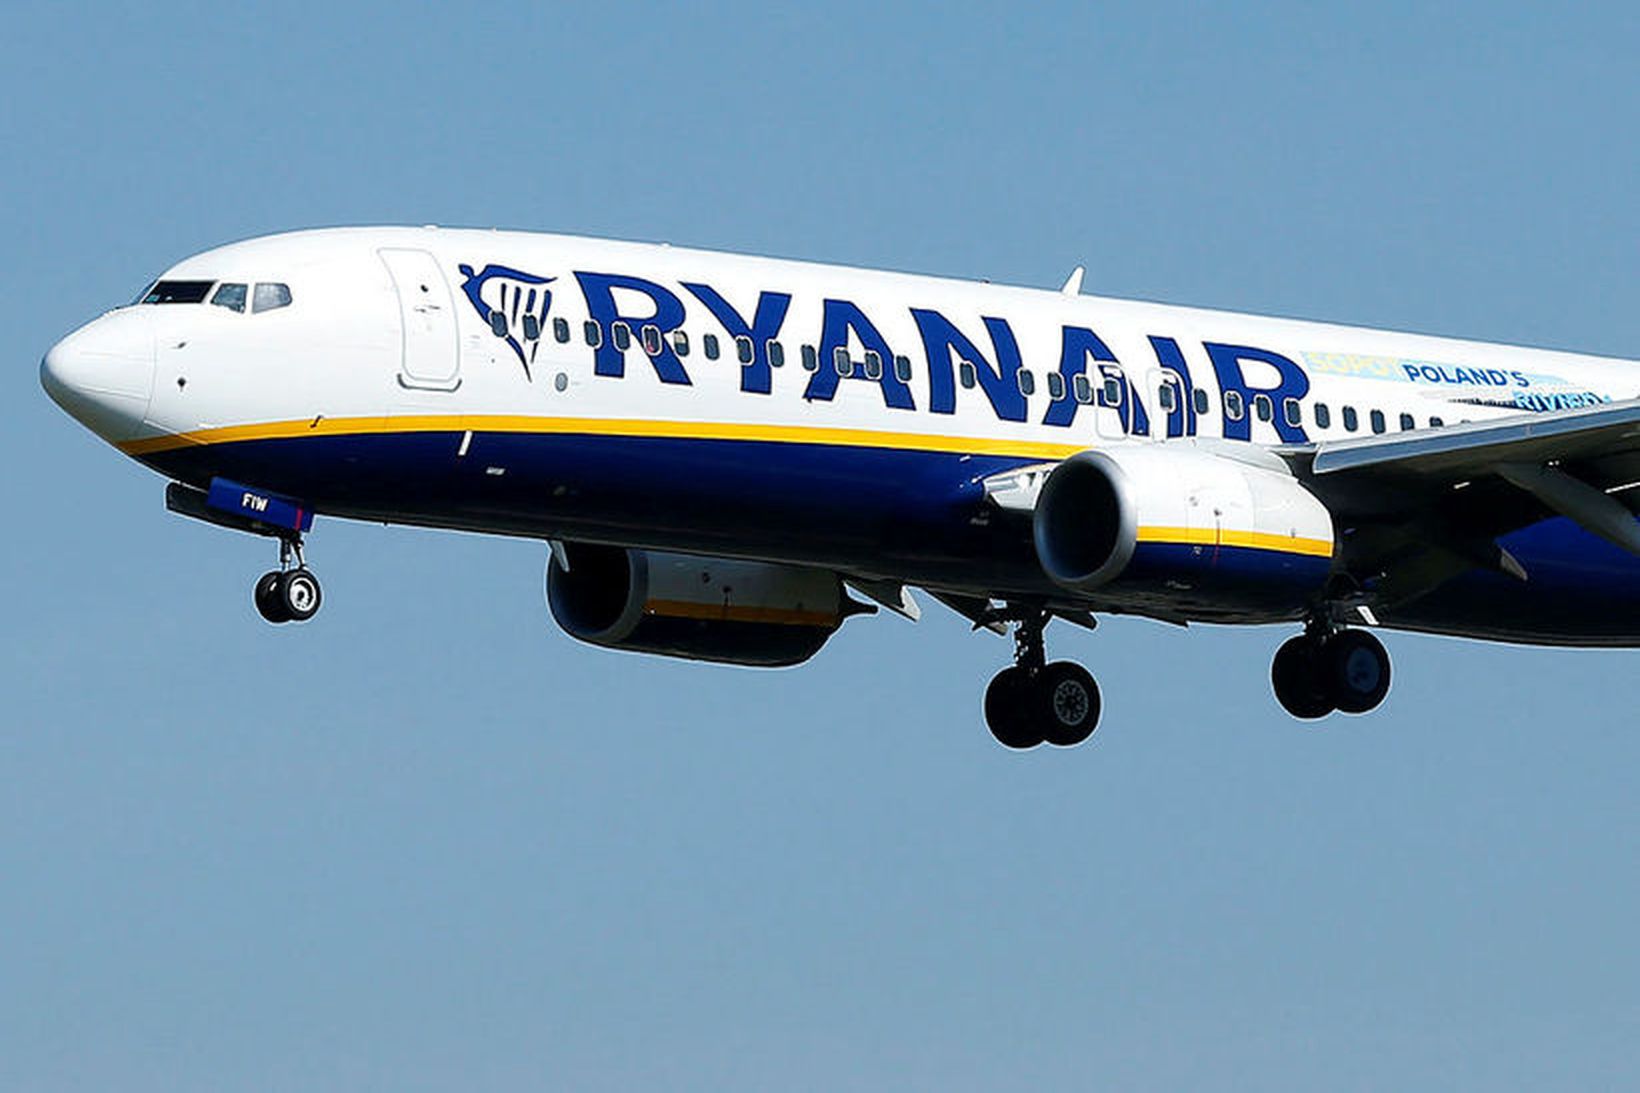 Lággjaldaflugfélagið Ryanair hættir um áramótin að fljúga til þriggja Kanaríeyja.